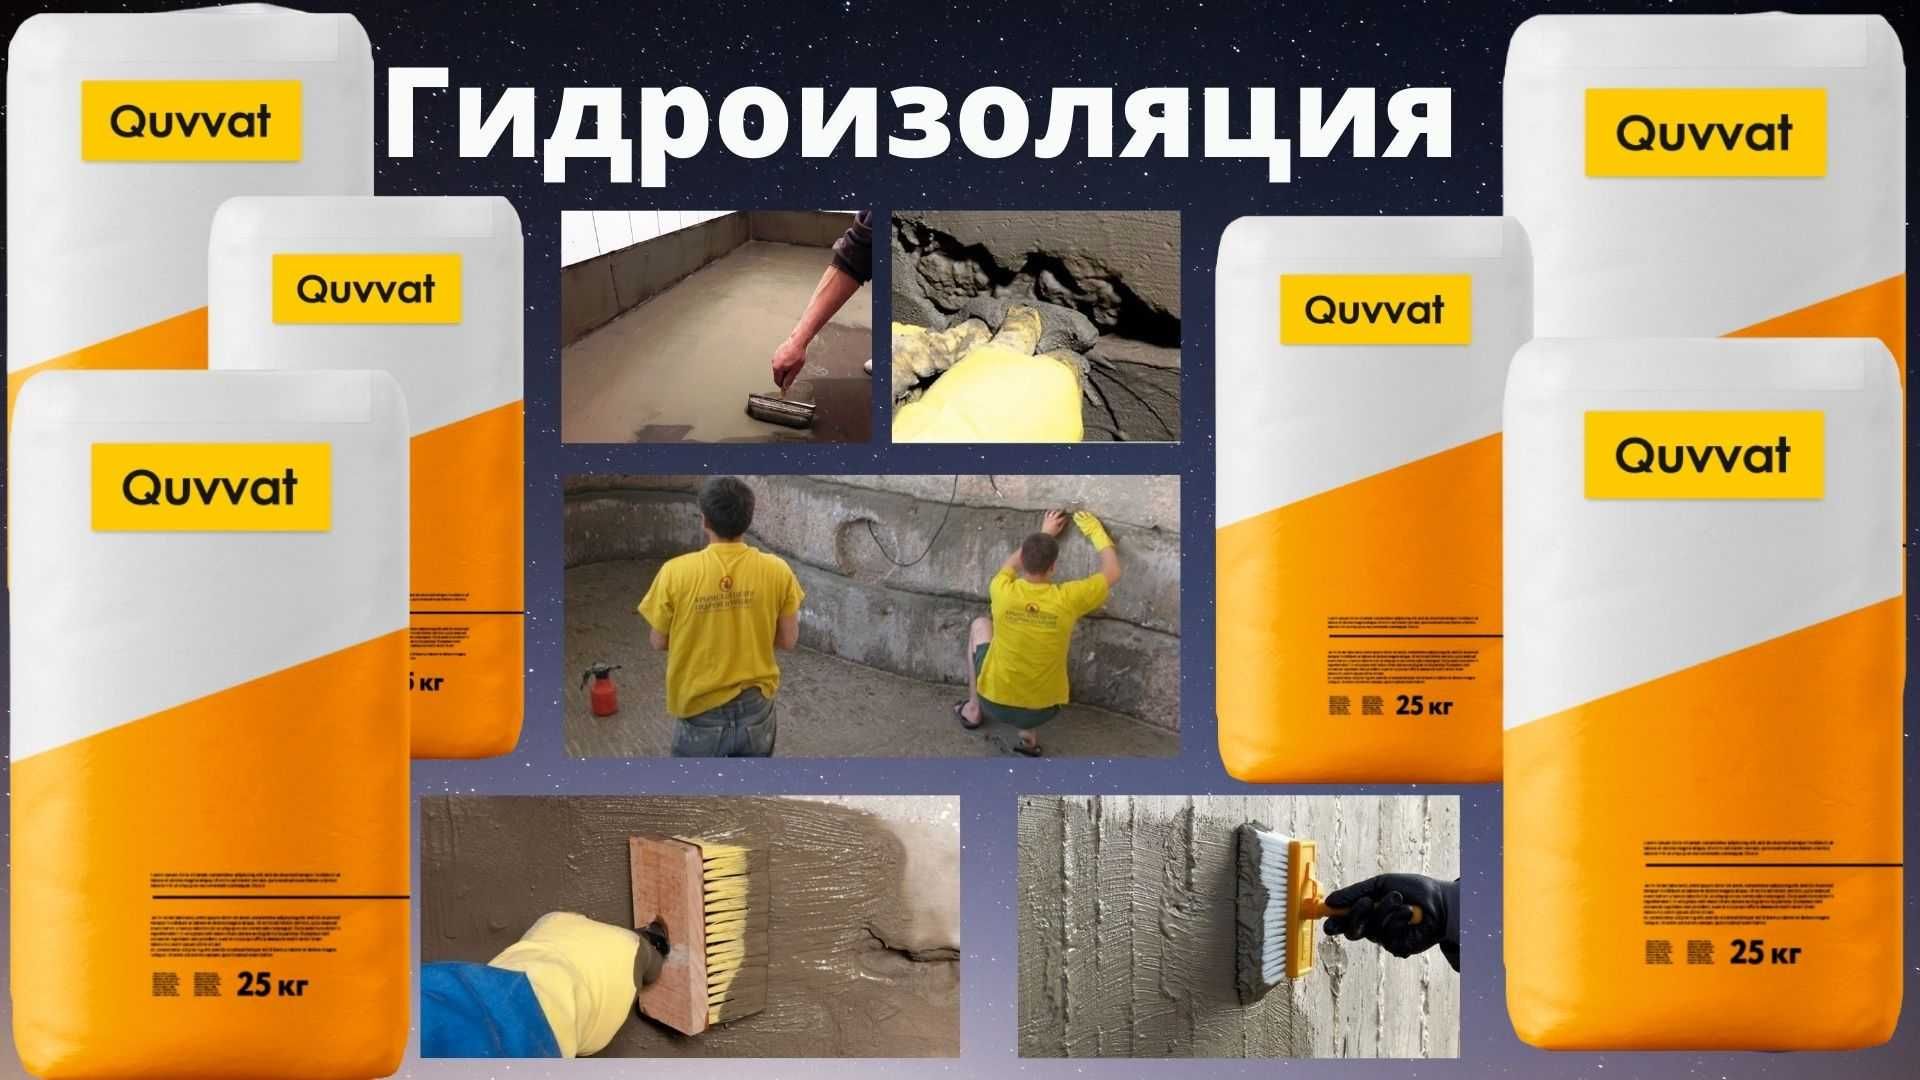 Услуги и материалы гидроизоляции Quvvat (Узбекский материал)